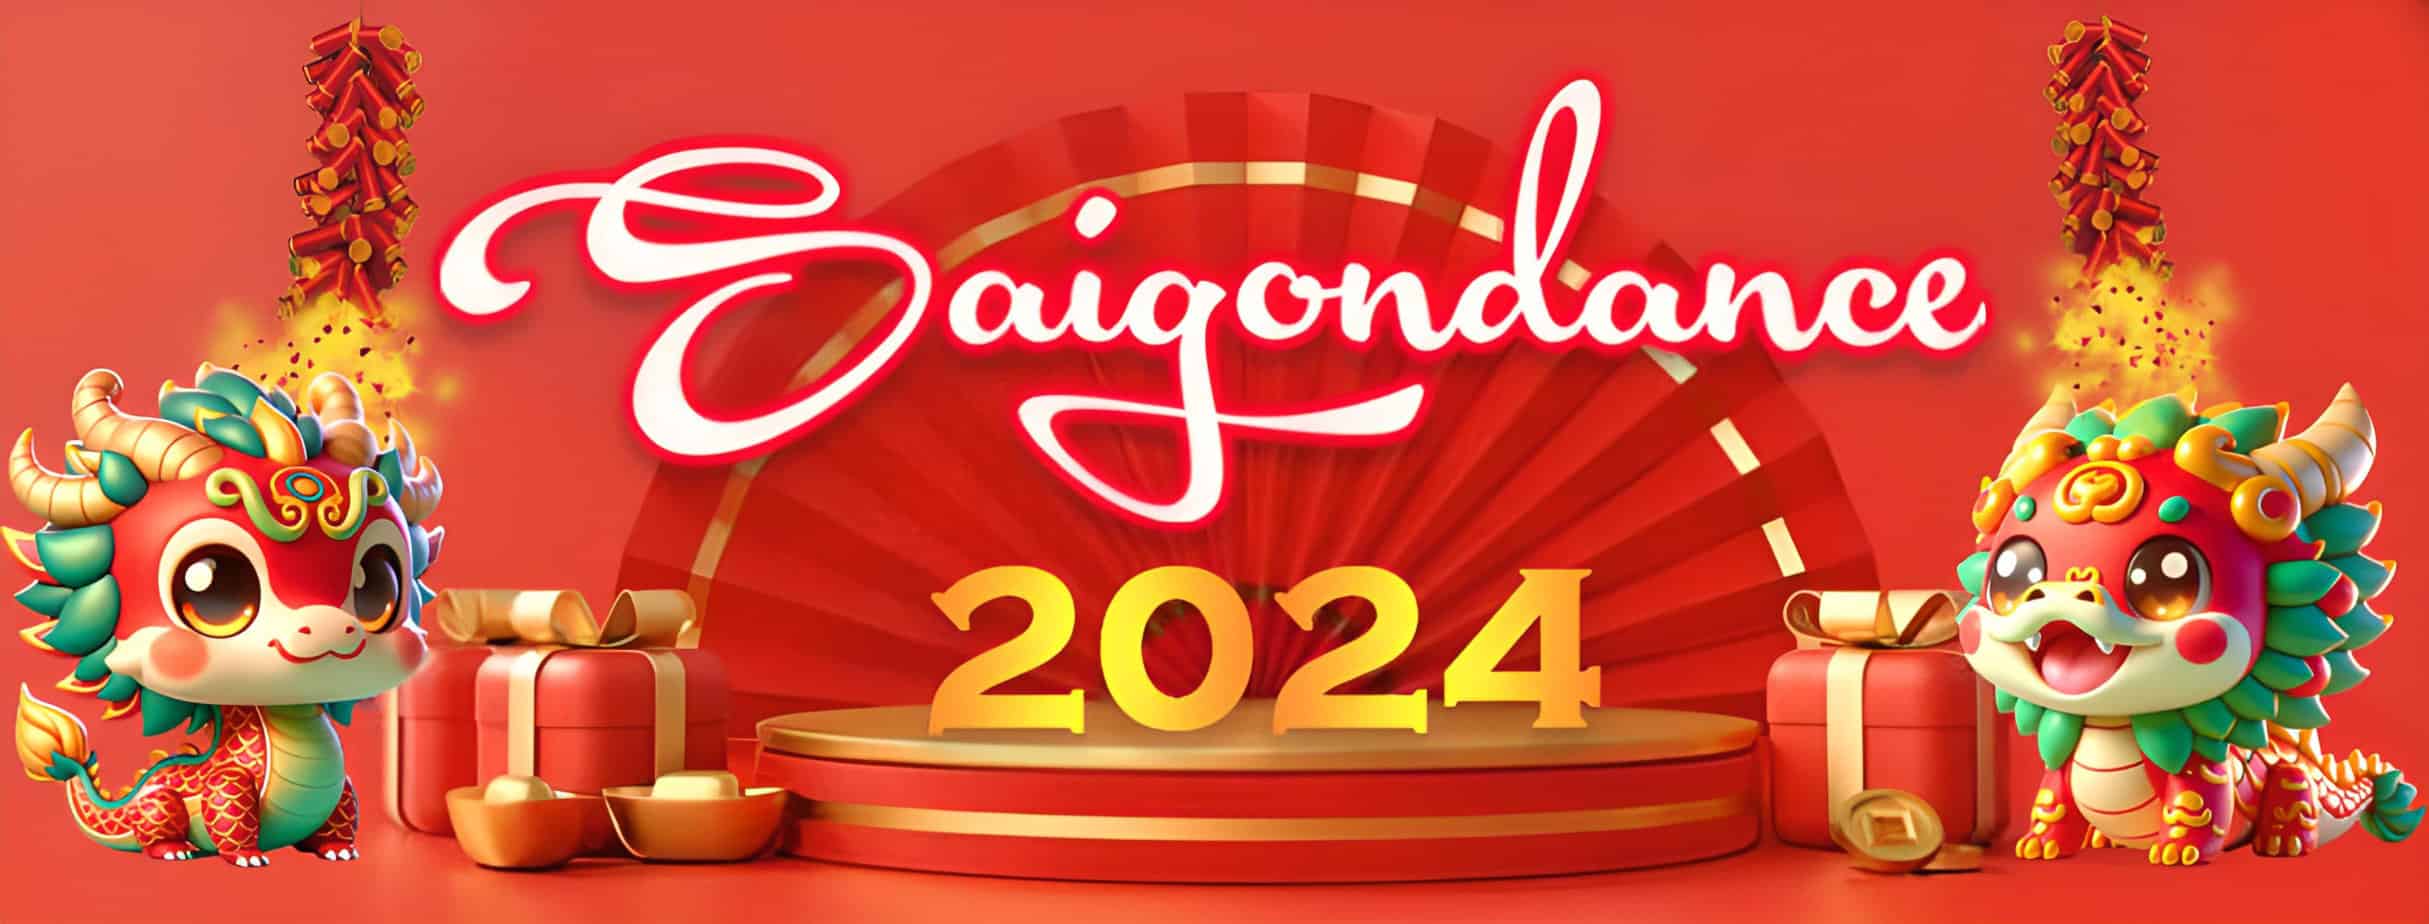 SAIGONDANCE CHÚC MỪNG NĂM MỚI 2024 2